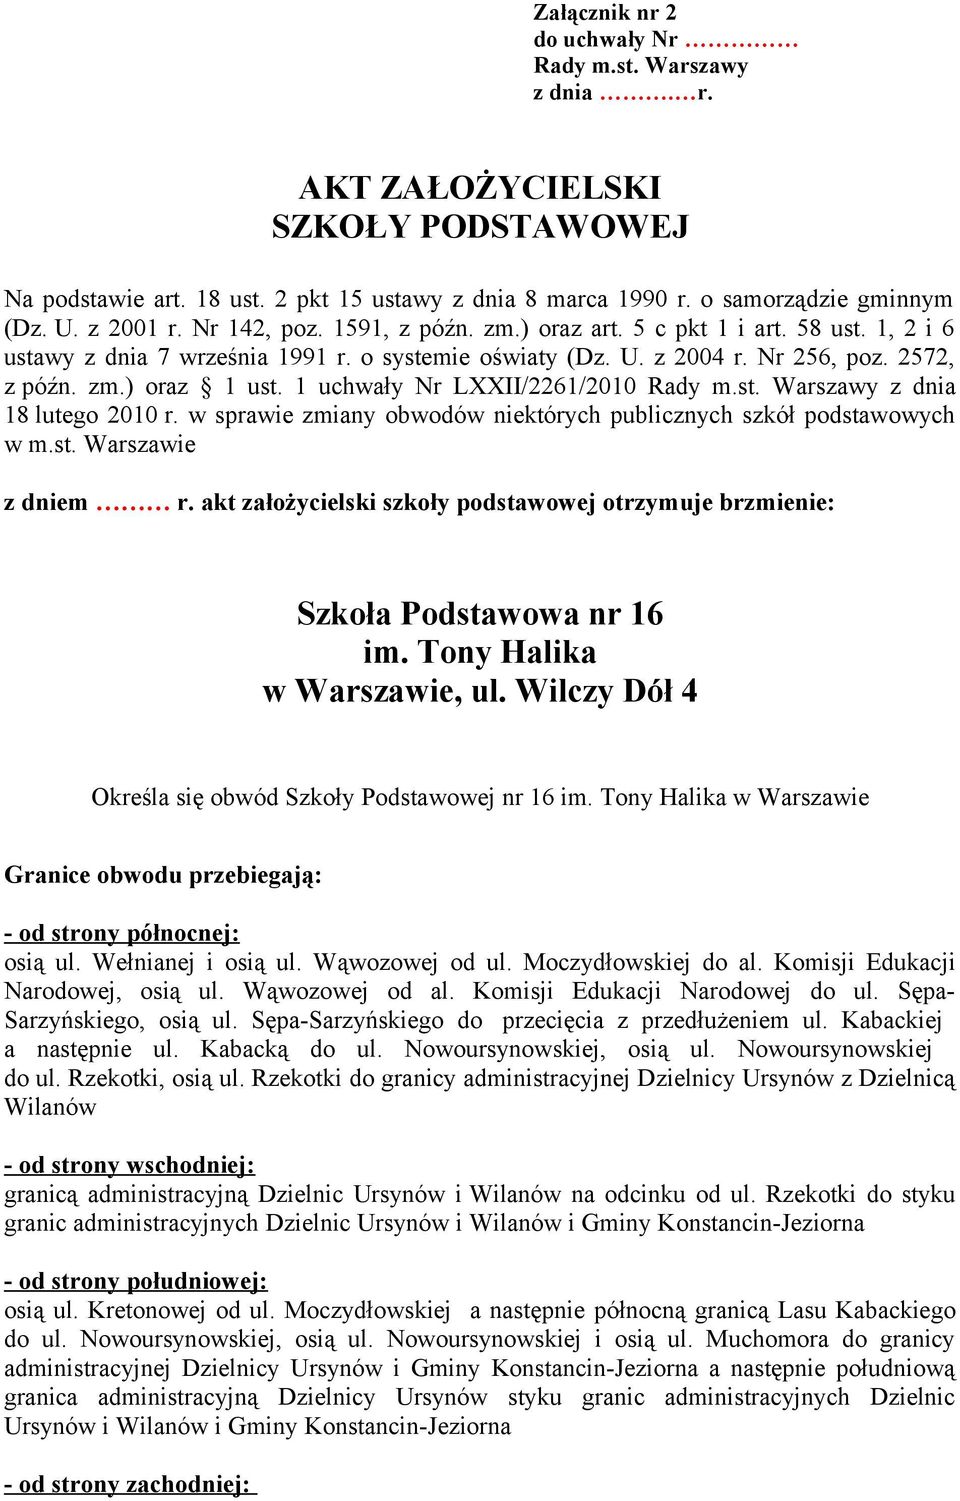 1 uchwały Nr LXXII/2261/2010 z dnia 18 lutego 2010 r. w sprawie zmiany obwodów niektórych publicznych szkół podstawowych w m.st. Warszawie z dniem r.